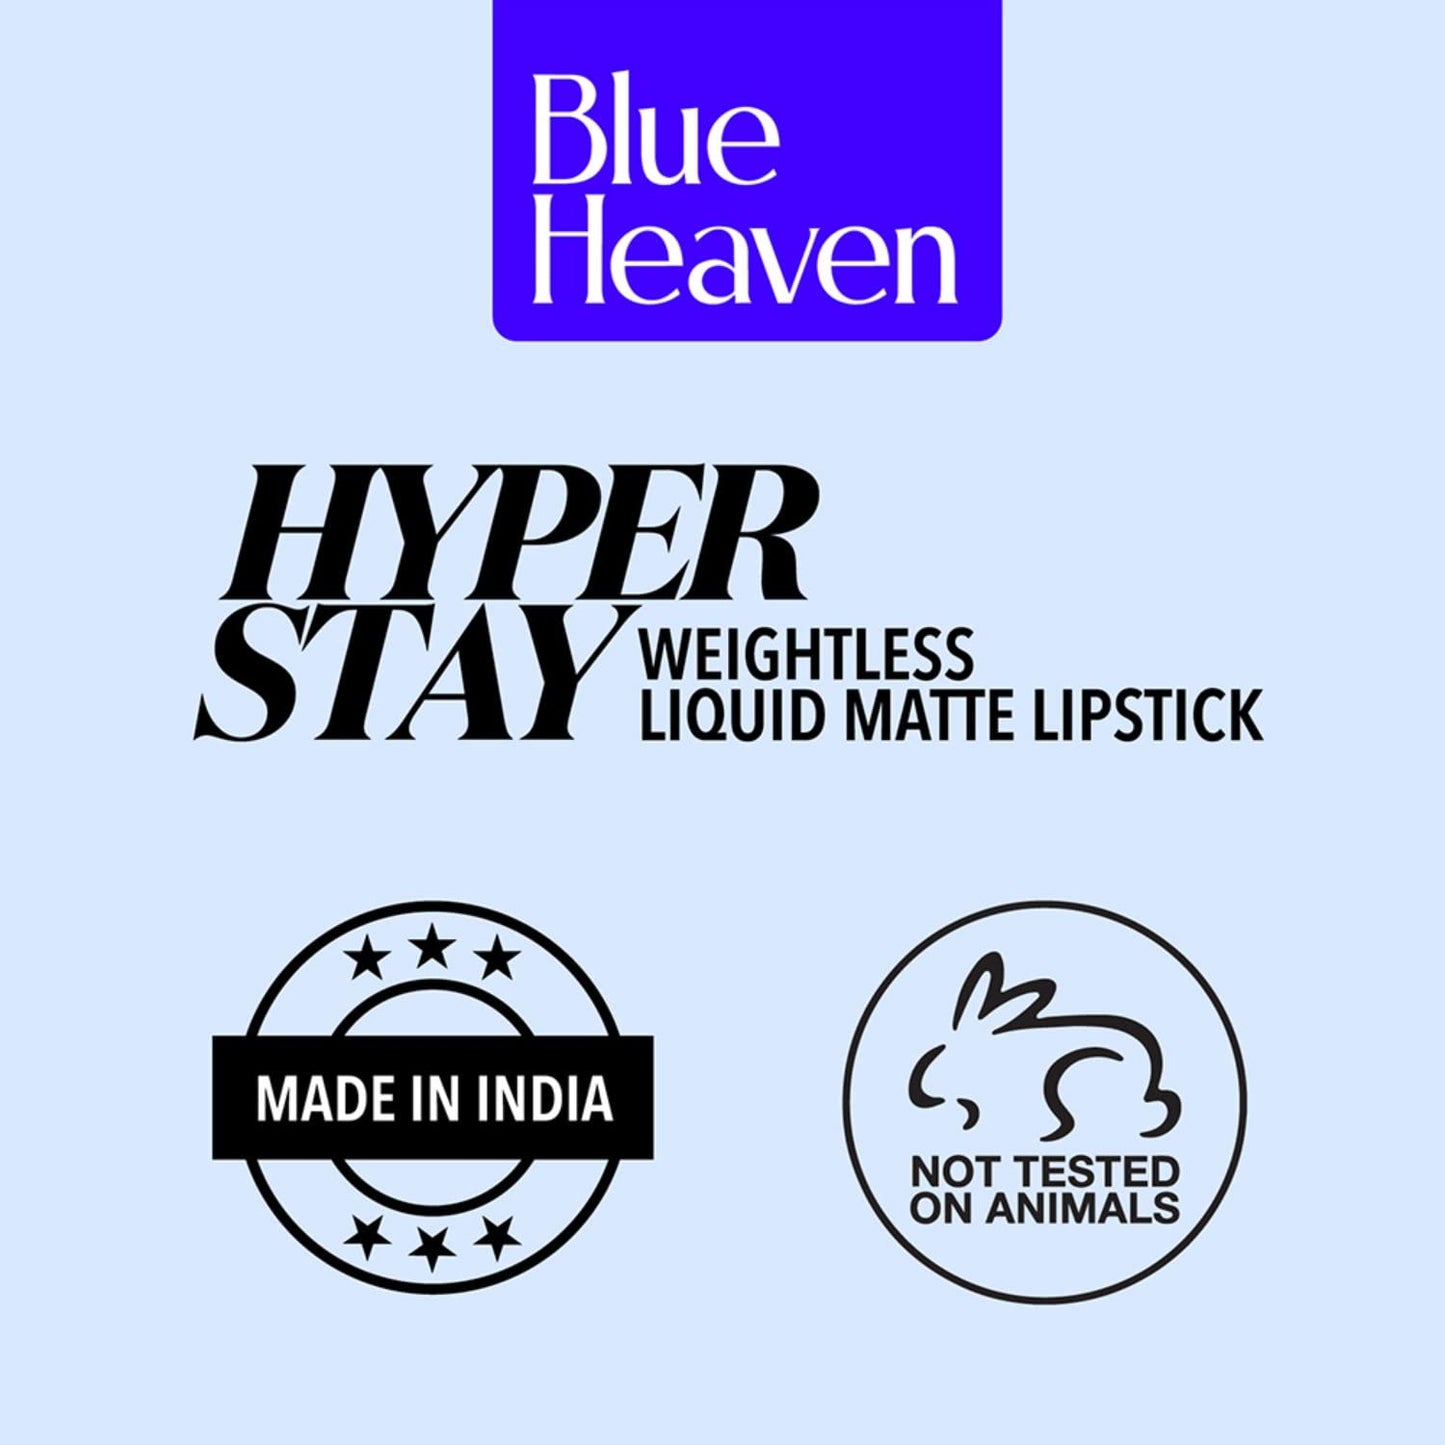 Blue Heaven Hyperstay Weightless Liquid Matte Lipstick, Smudgeproof, Transfer proof, Deep Fuschia, 6ml